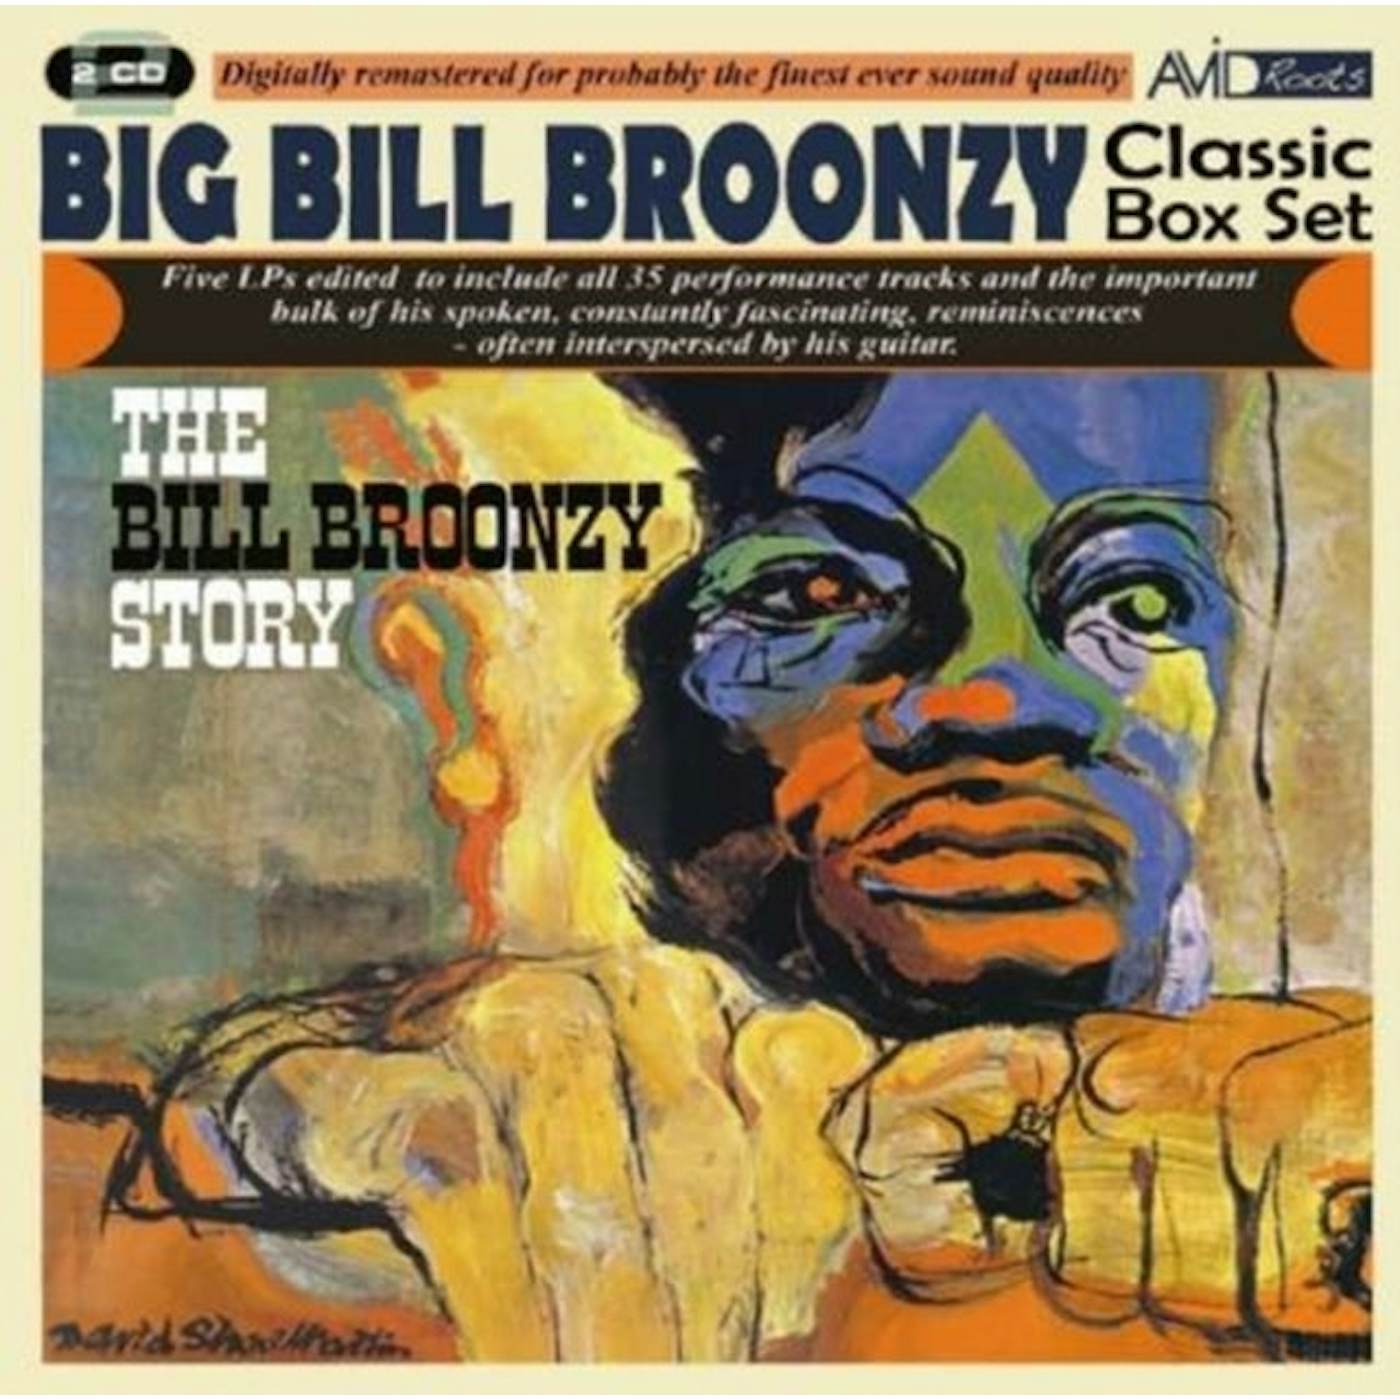 Big Bill Broonzy CD - Classic Box Set (The Bill Broonzy Story)